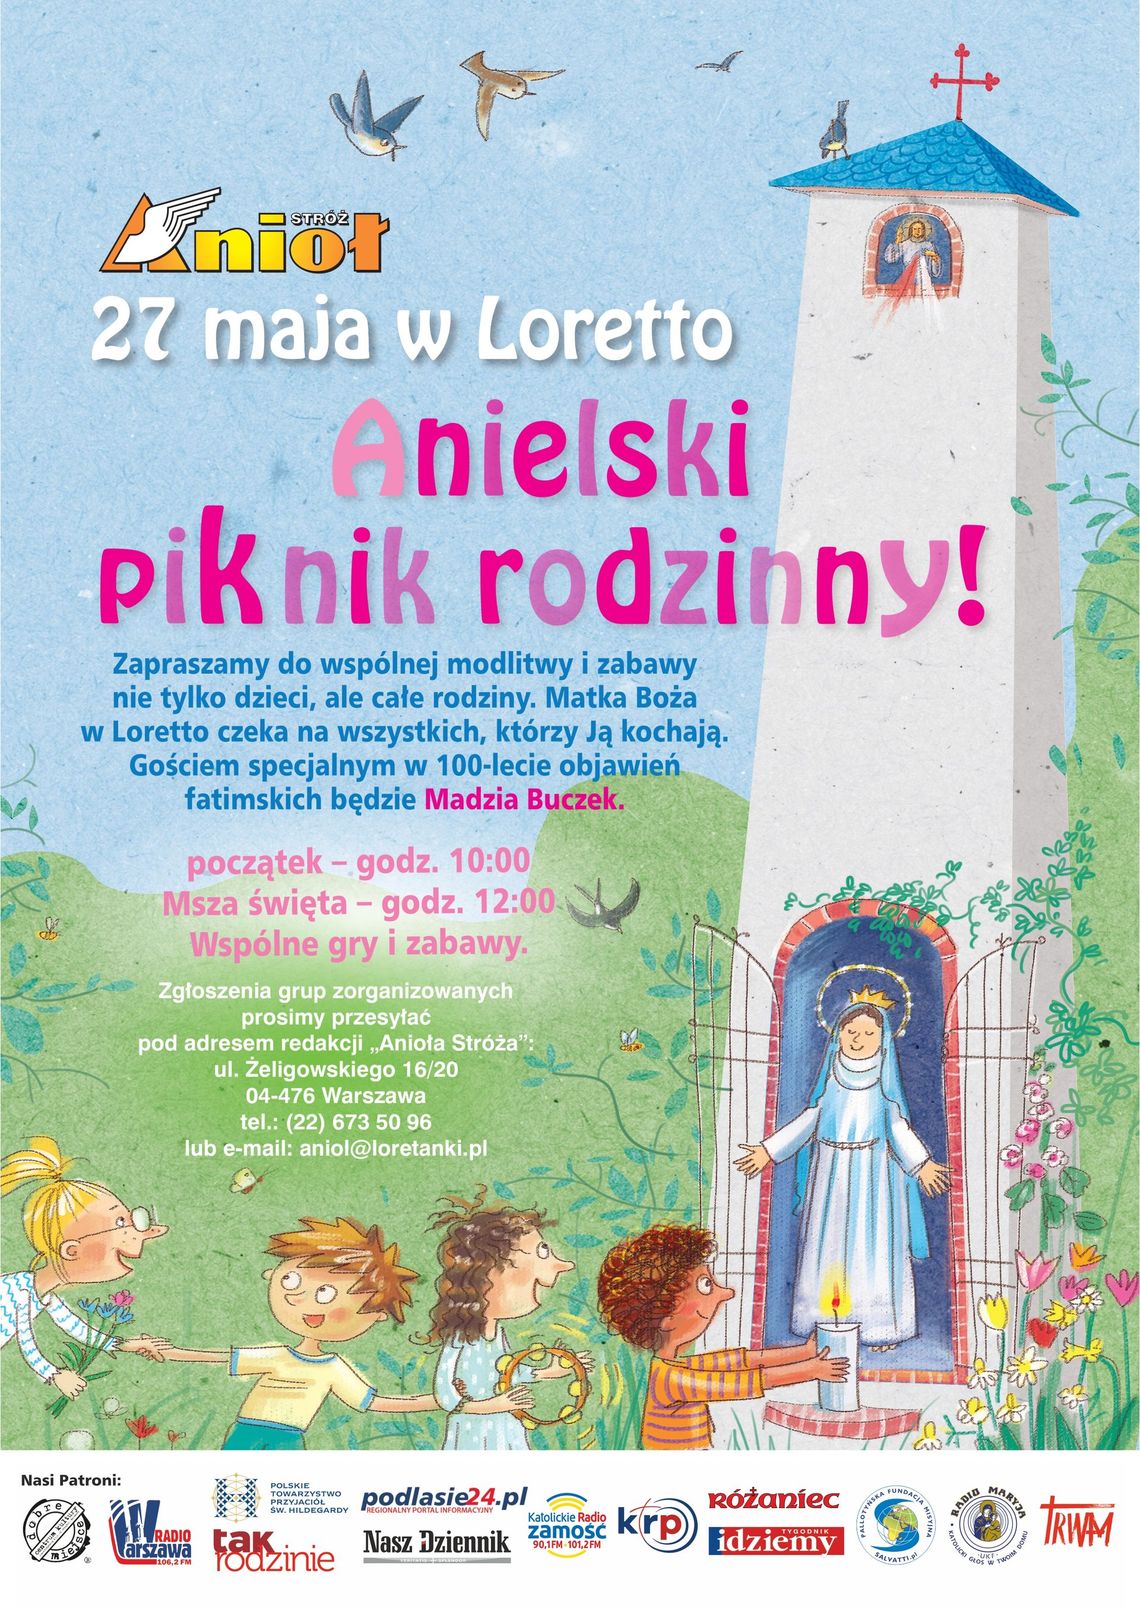 Anielski Piknik Rodzinny Loretto 27 maja, początek godz. 10.00